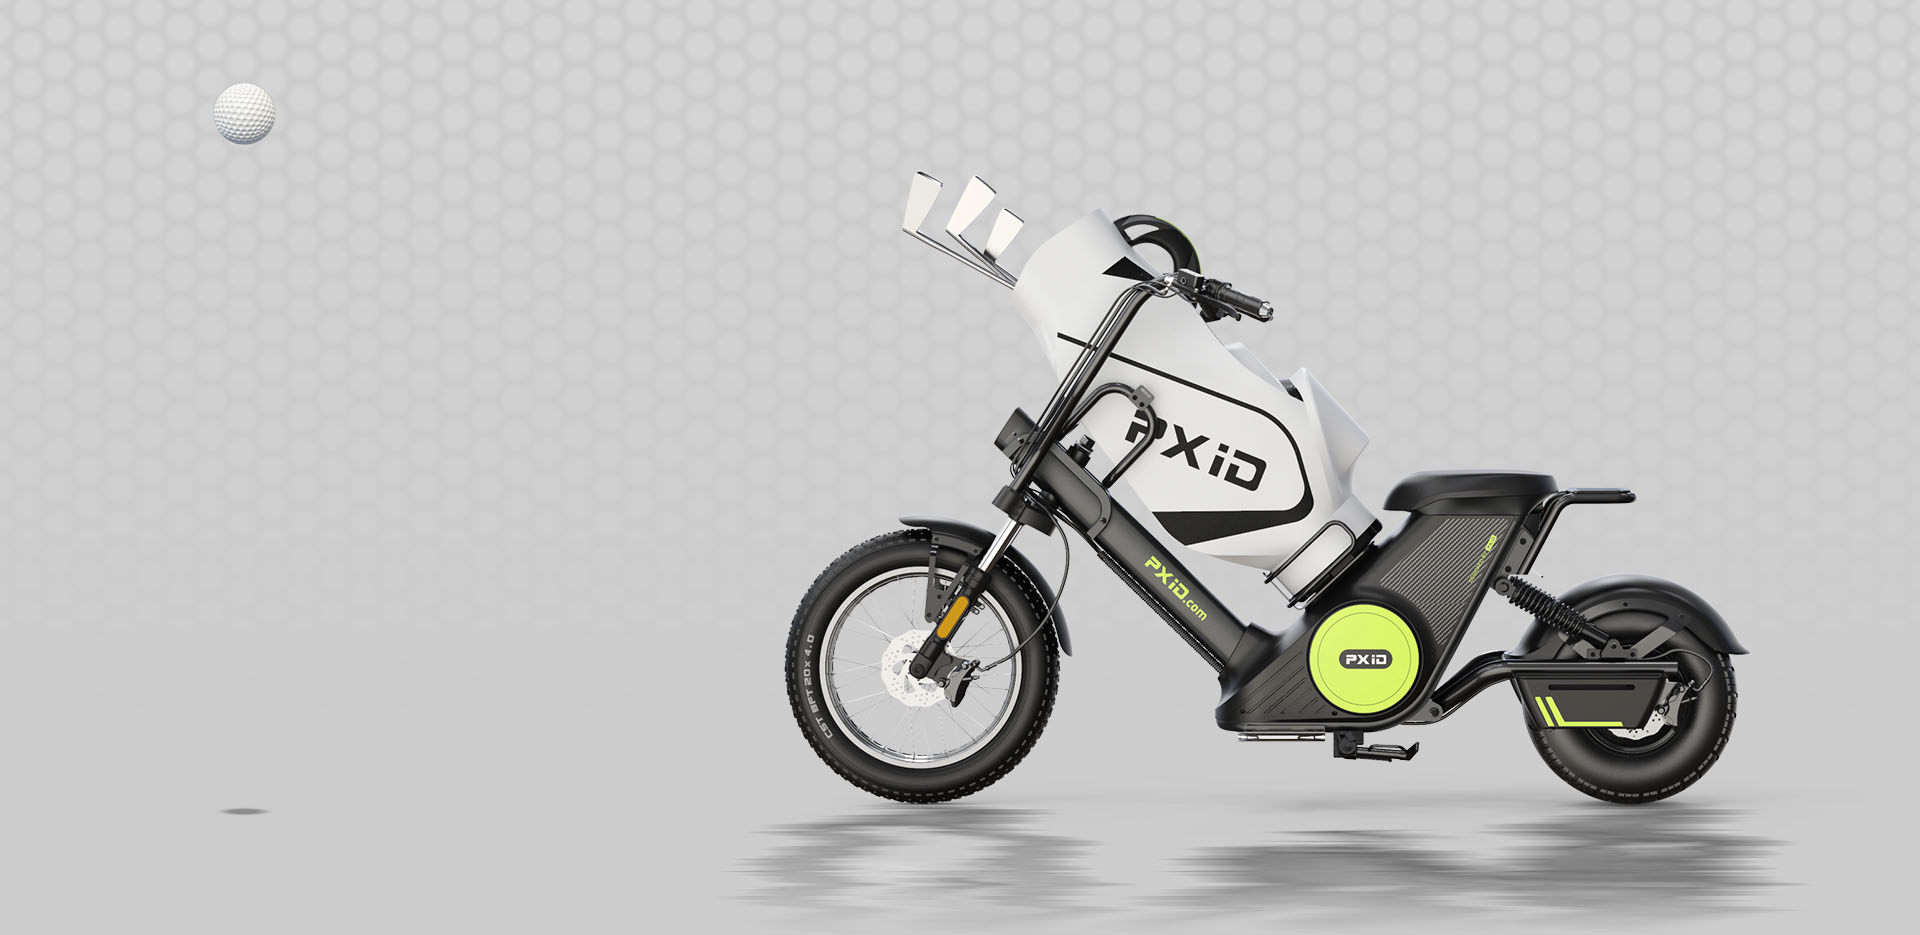 Citycoco 2000 W cserélhető akkumulátoros elektromos motorkerékpár golftáskával Kiemelt kép